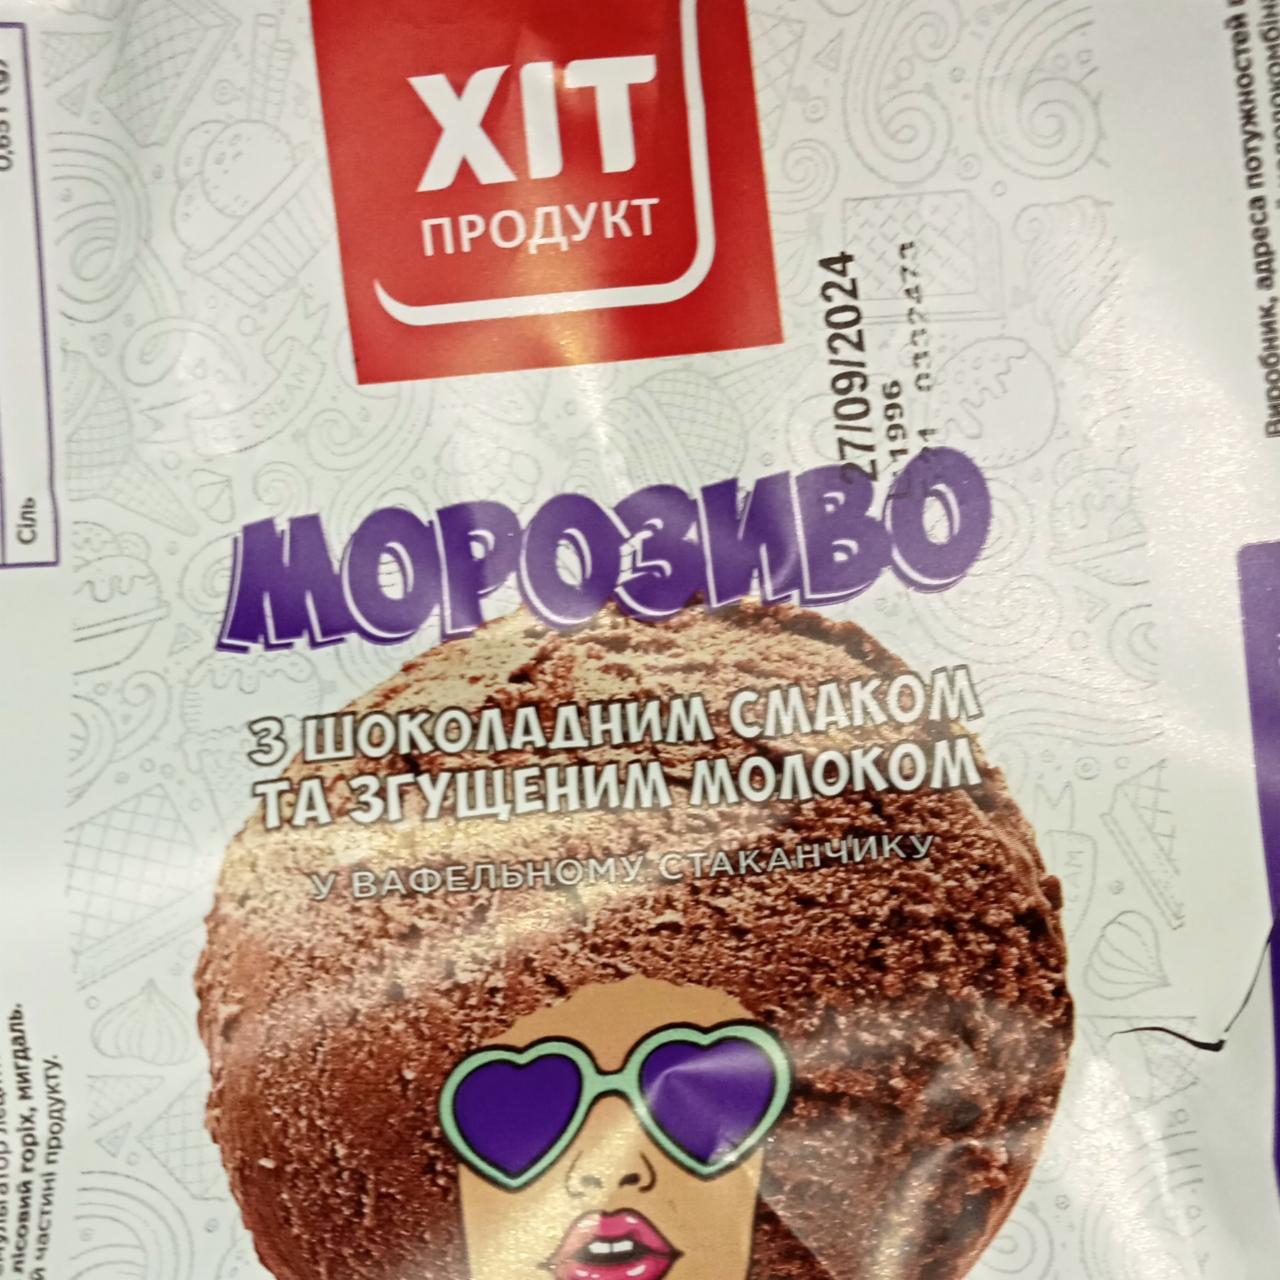 Фото - Мороженое с шоколадным вкусом и сгущенкой Хит Продукт